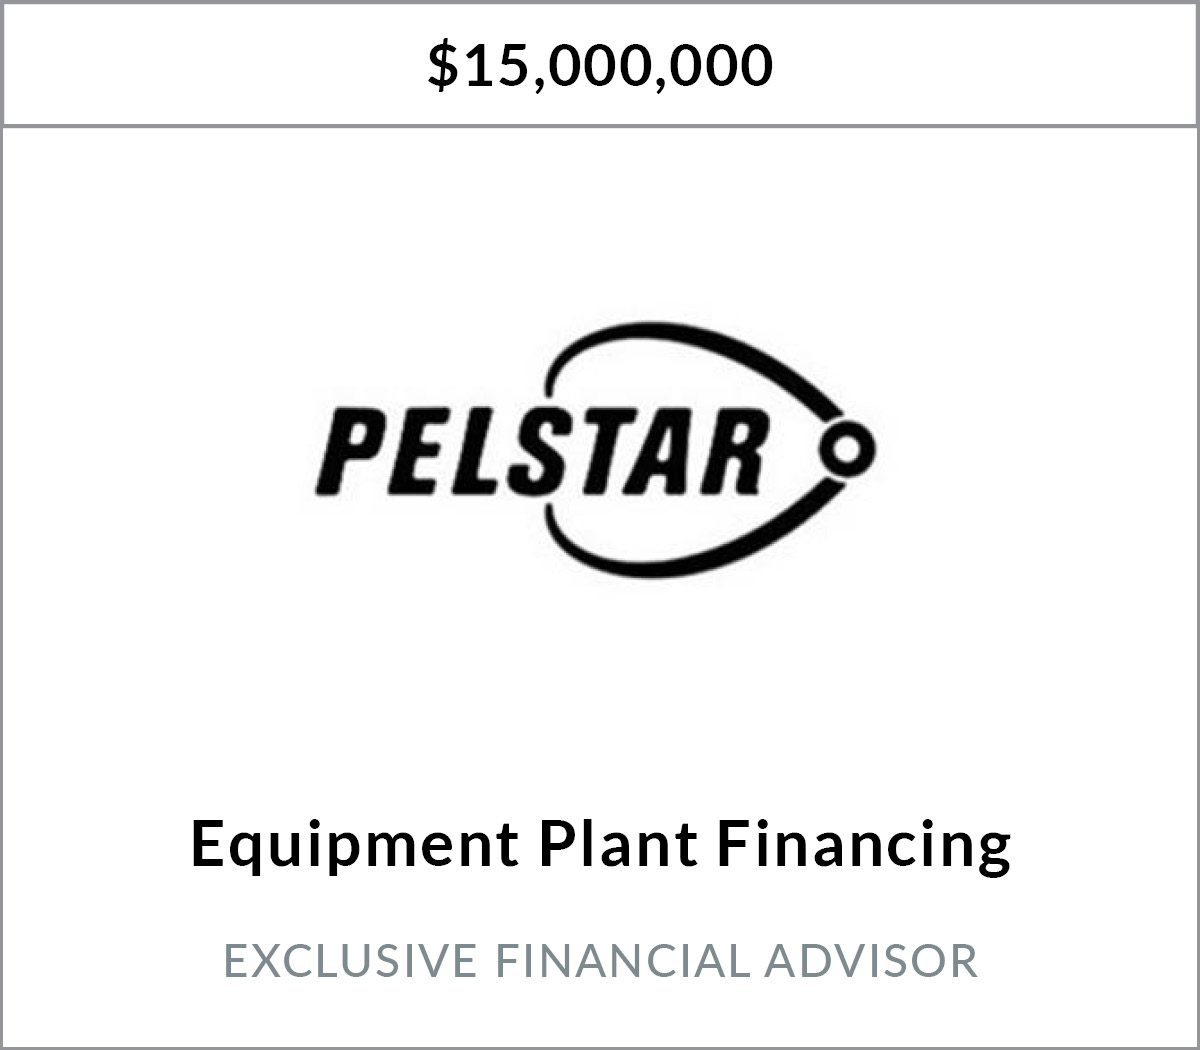 Pelstar, LLC Equipment Planning and Revolver Financing